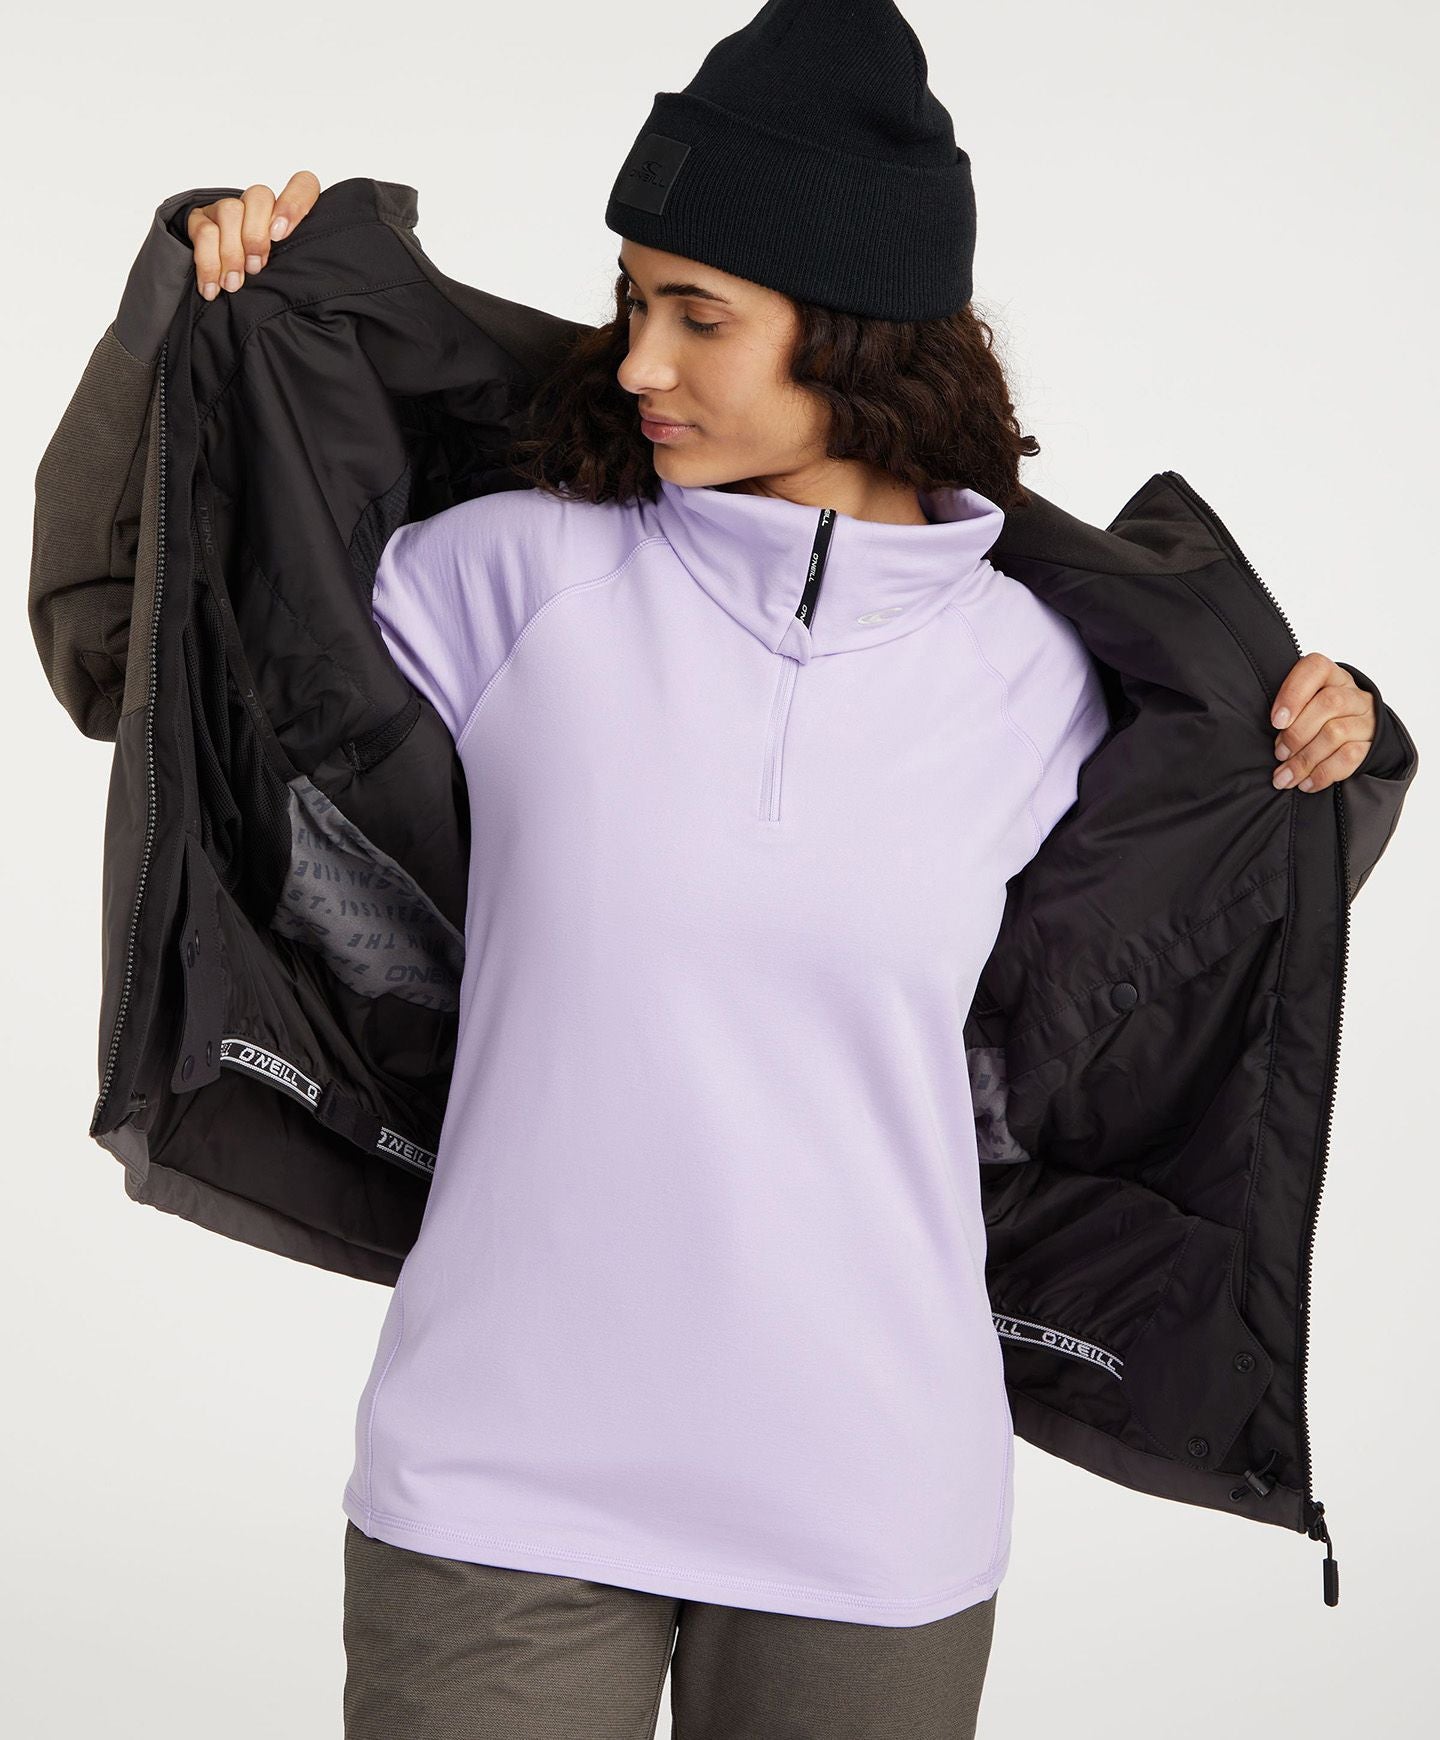 Women's Carbonite Snow Jacket - Black Out Colour Block